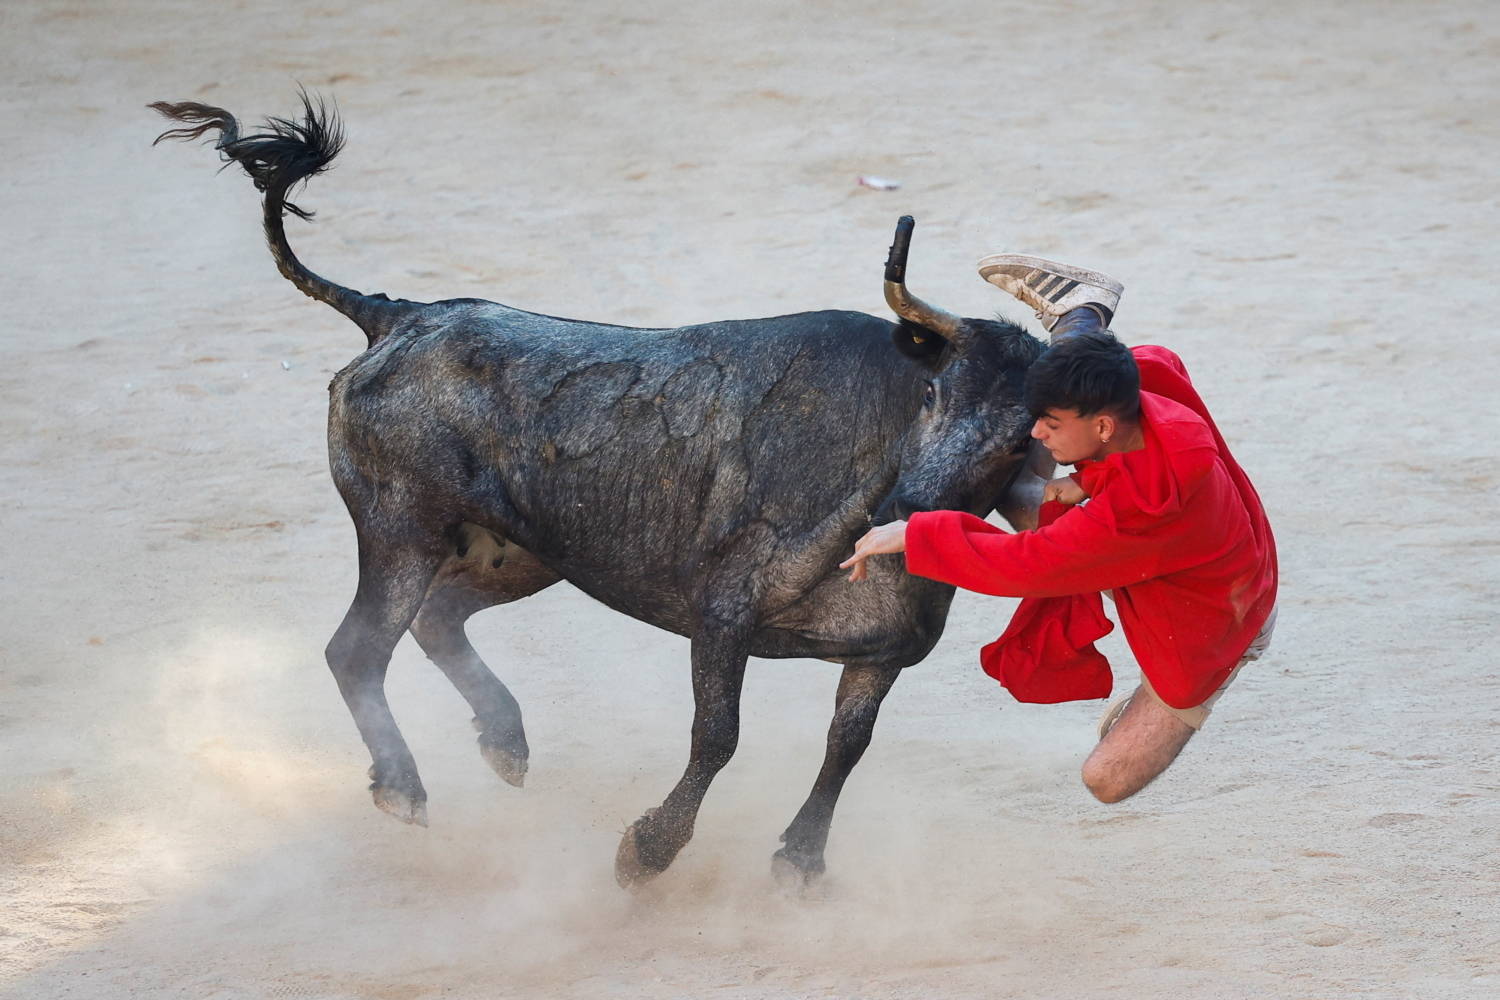 Espanha: corrida de touros de San Fermín tem dezenas de feridos - Notícias  - R7 Internacional